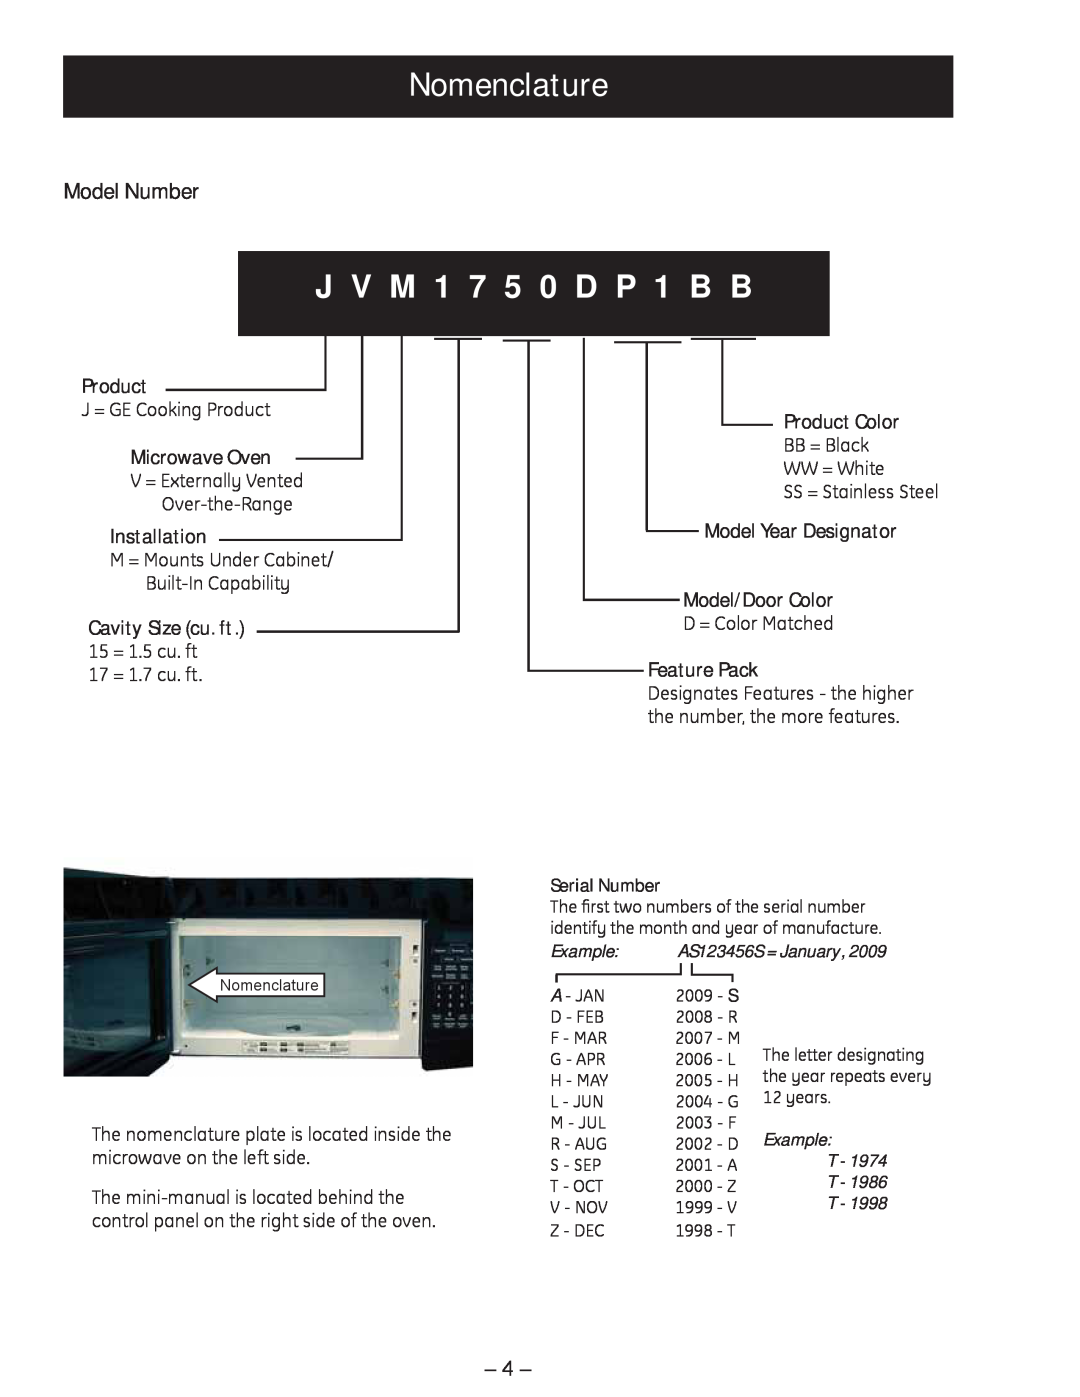 GE JVM1750 manual Nomenclature, J V M 1 7 5 0 D P 1 B B, Model Number, Microwave Oven, Installation, Product Color 